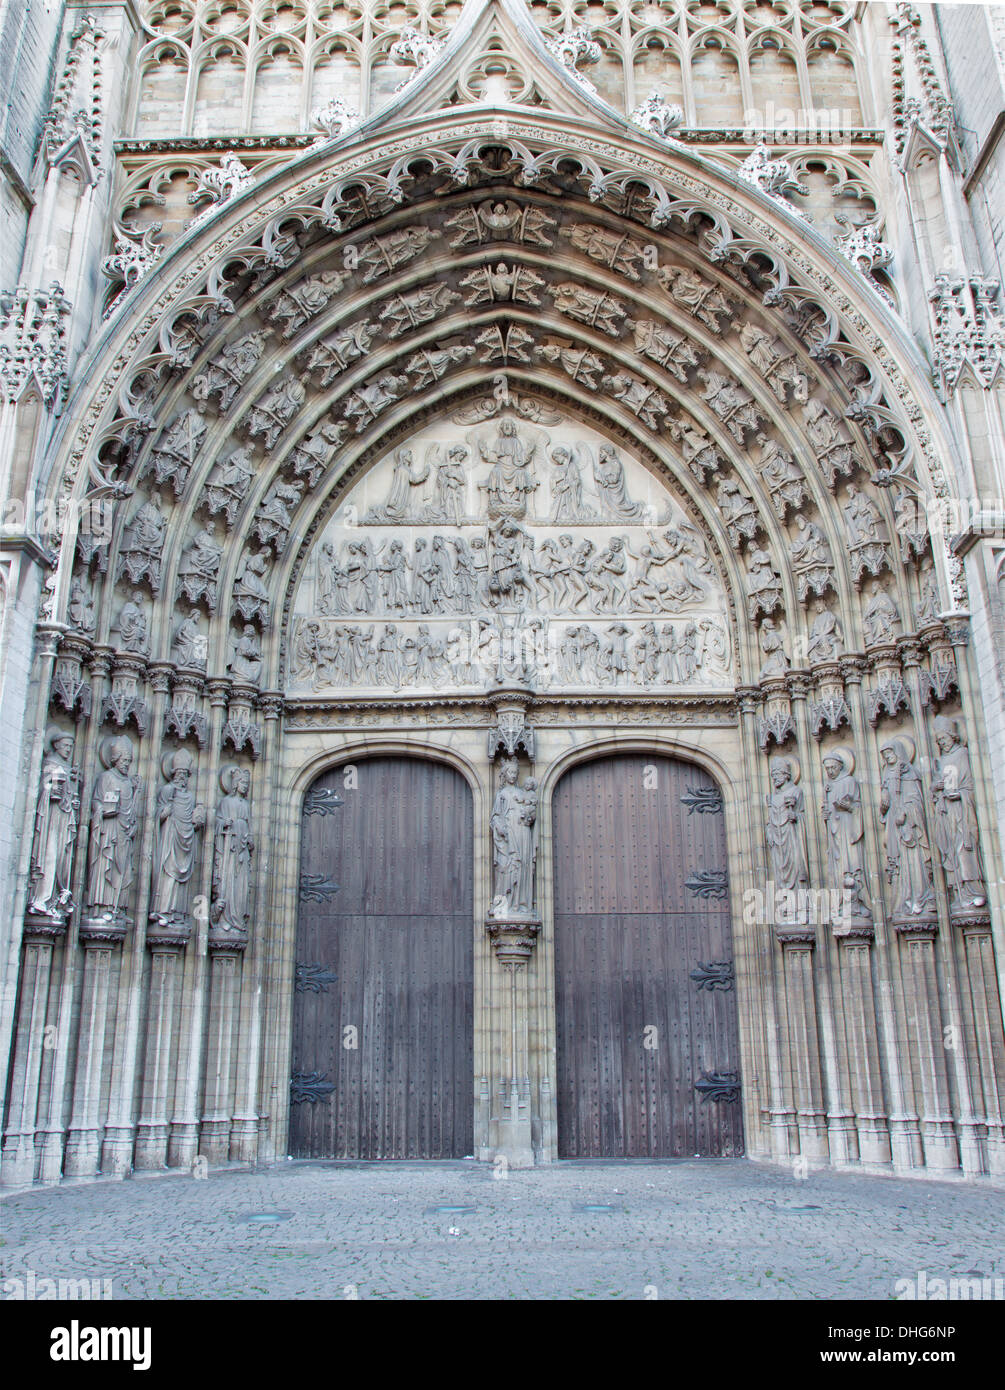 Antwerpen, Belgien - 5. SEPTEMBER: Main Portal der Kathedrale unserer lieben Frau mit dem Relief des jüngsten Gerichts Stockfoto